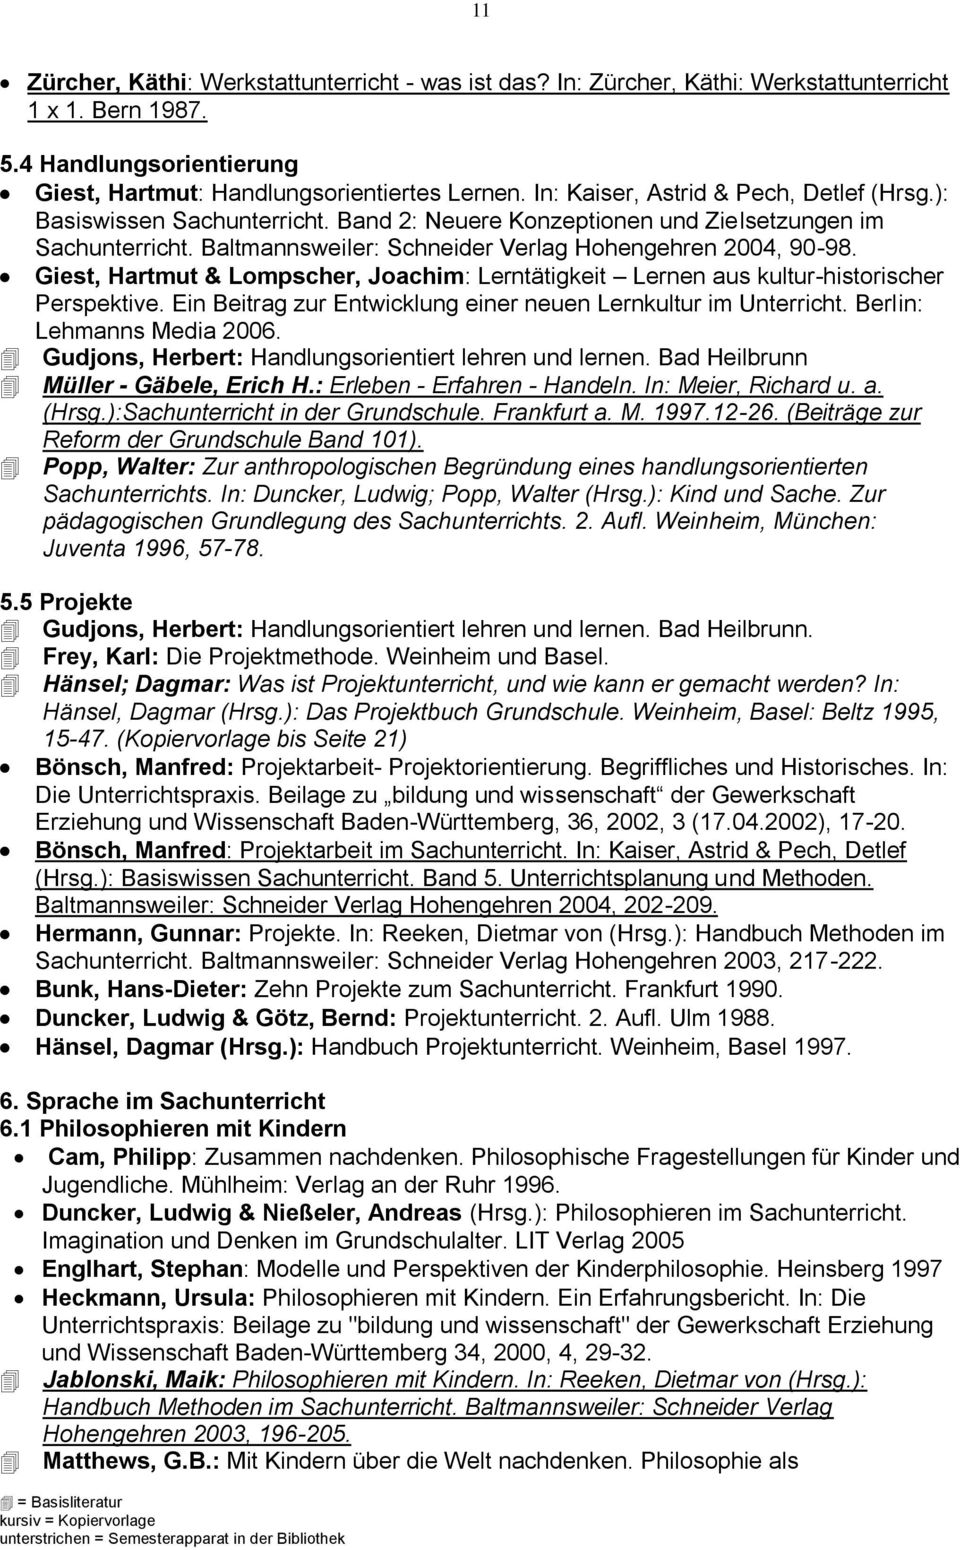 Giest, Hartmut & Lompscher, Joachim: Lerntätigkeit Lernen aus kultur-historischer Perspektive. Ein Beitrag zur Entwicklung einer neuen Lernkultur im Unterricht. Berlin: Lehmanns Media 2006.